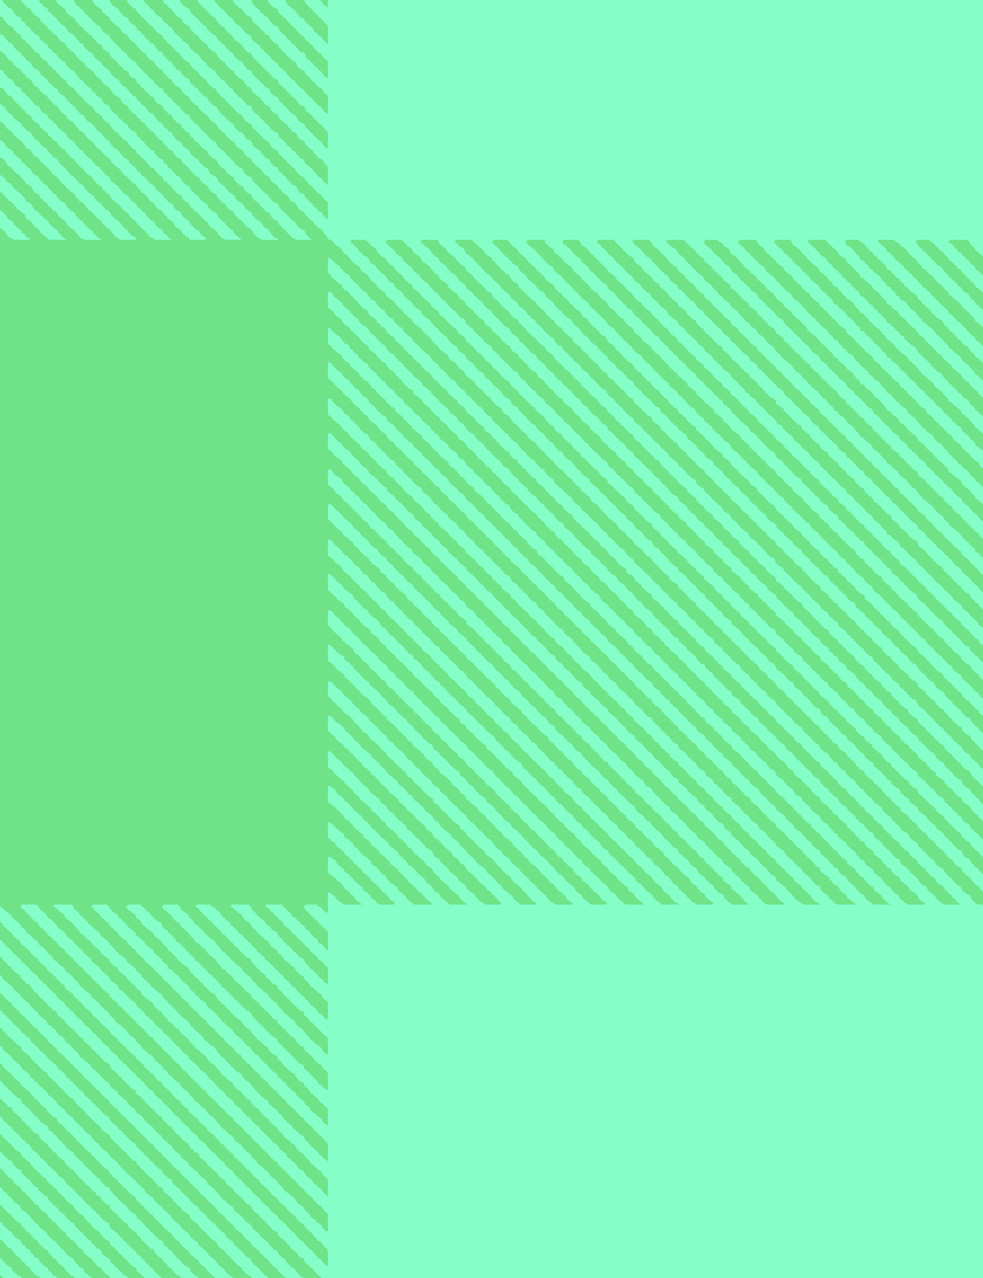 fond d'écran à carreaux verts,vert,ligne,aqua,jaune,turquoise